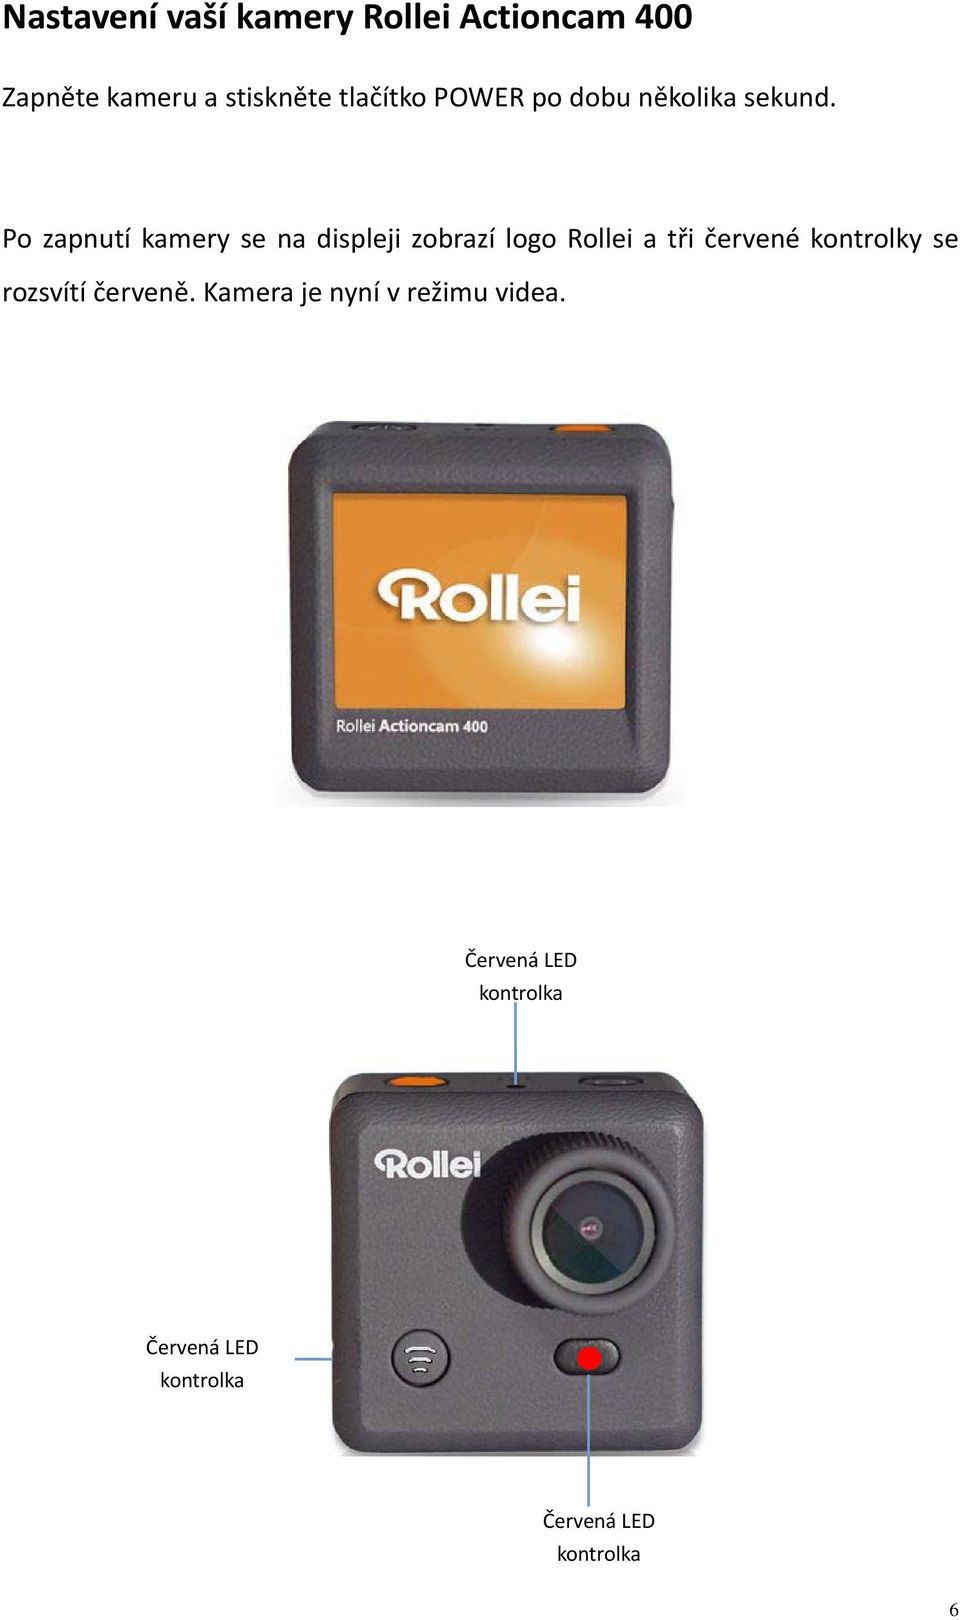 Po zapnutí kamery se na displeji zobrazí logo Rollei a tři červené kontrolky